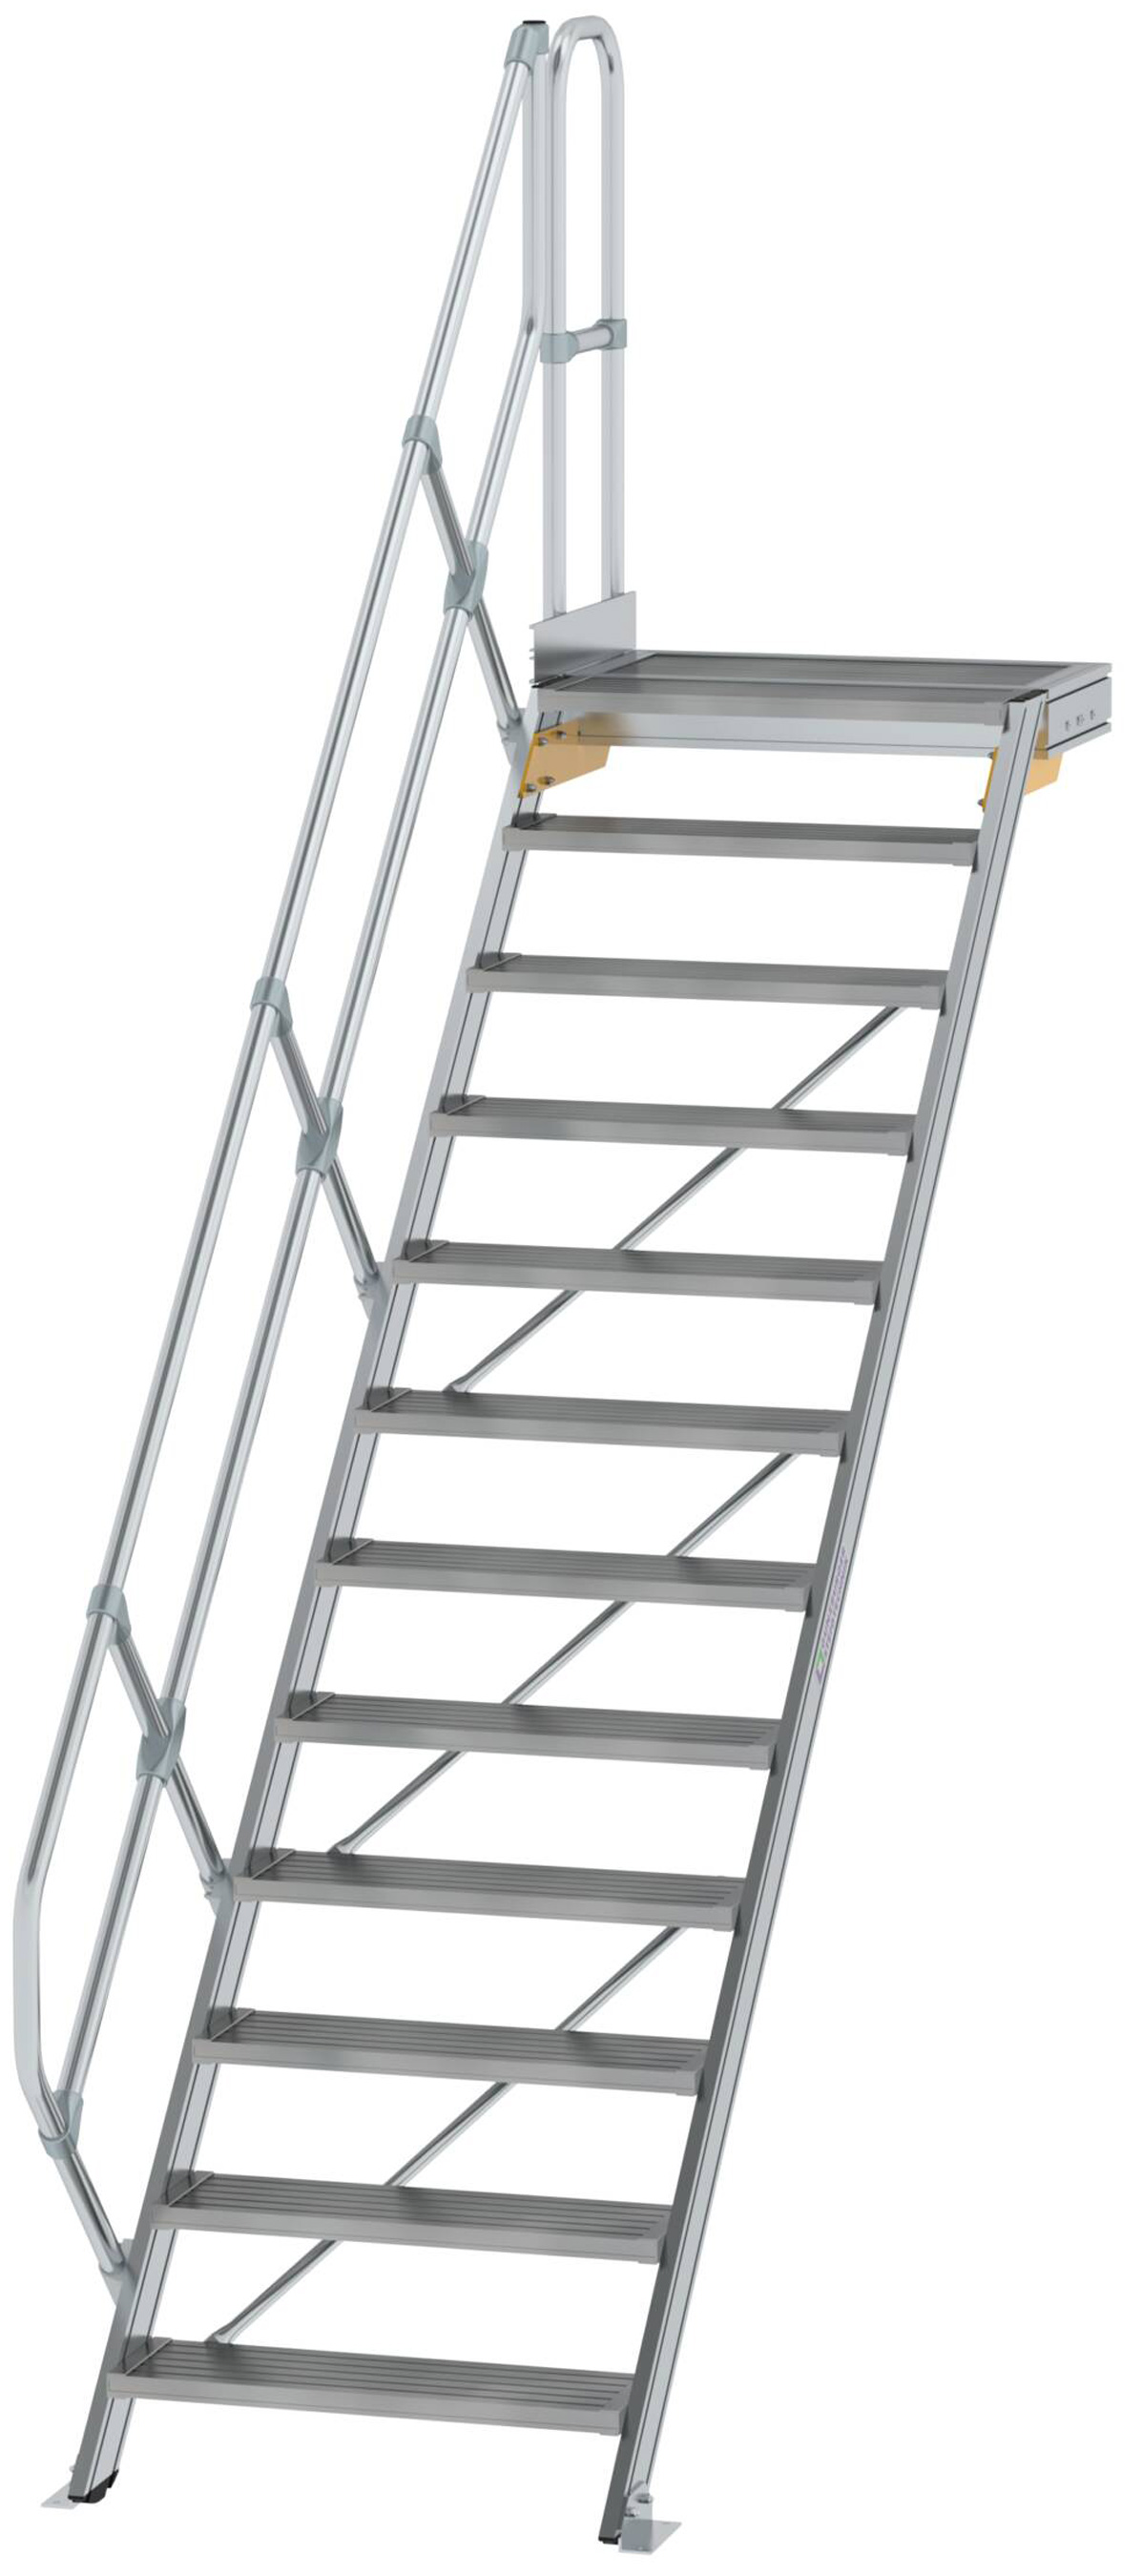 Günzburger Podesttreppe 45° 12 Stufen - 800 mm breit Alutreppe mit einem Handlauf - Stufenausführung Alu geriffelt (GB-600452) Bild-01